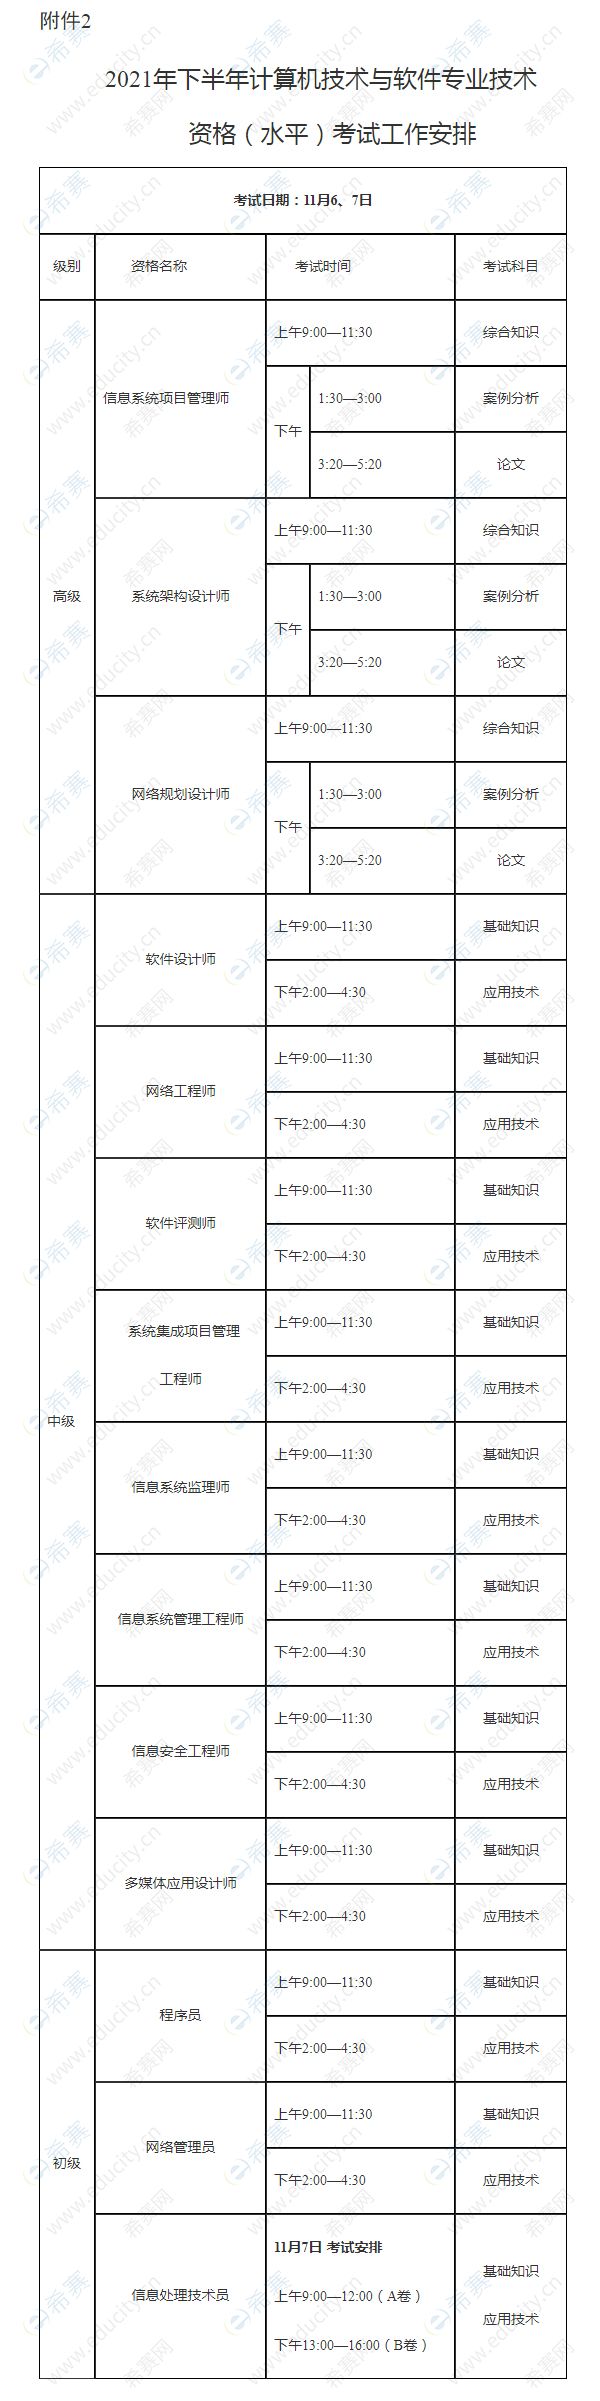 2021年下半年广西软考考试时间安排.jpg